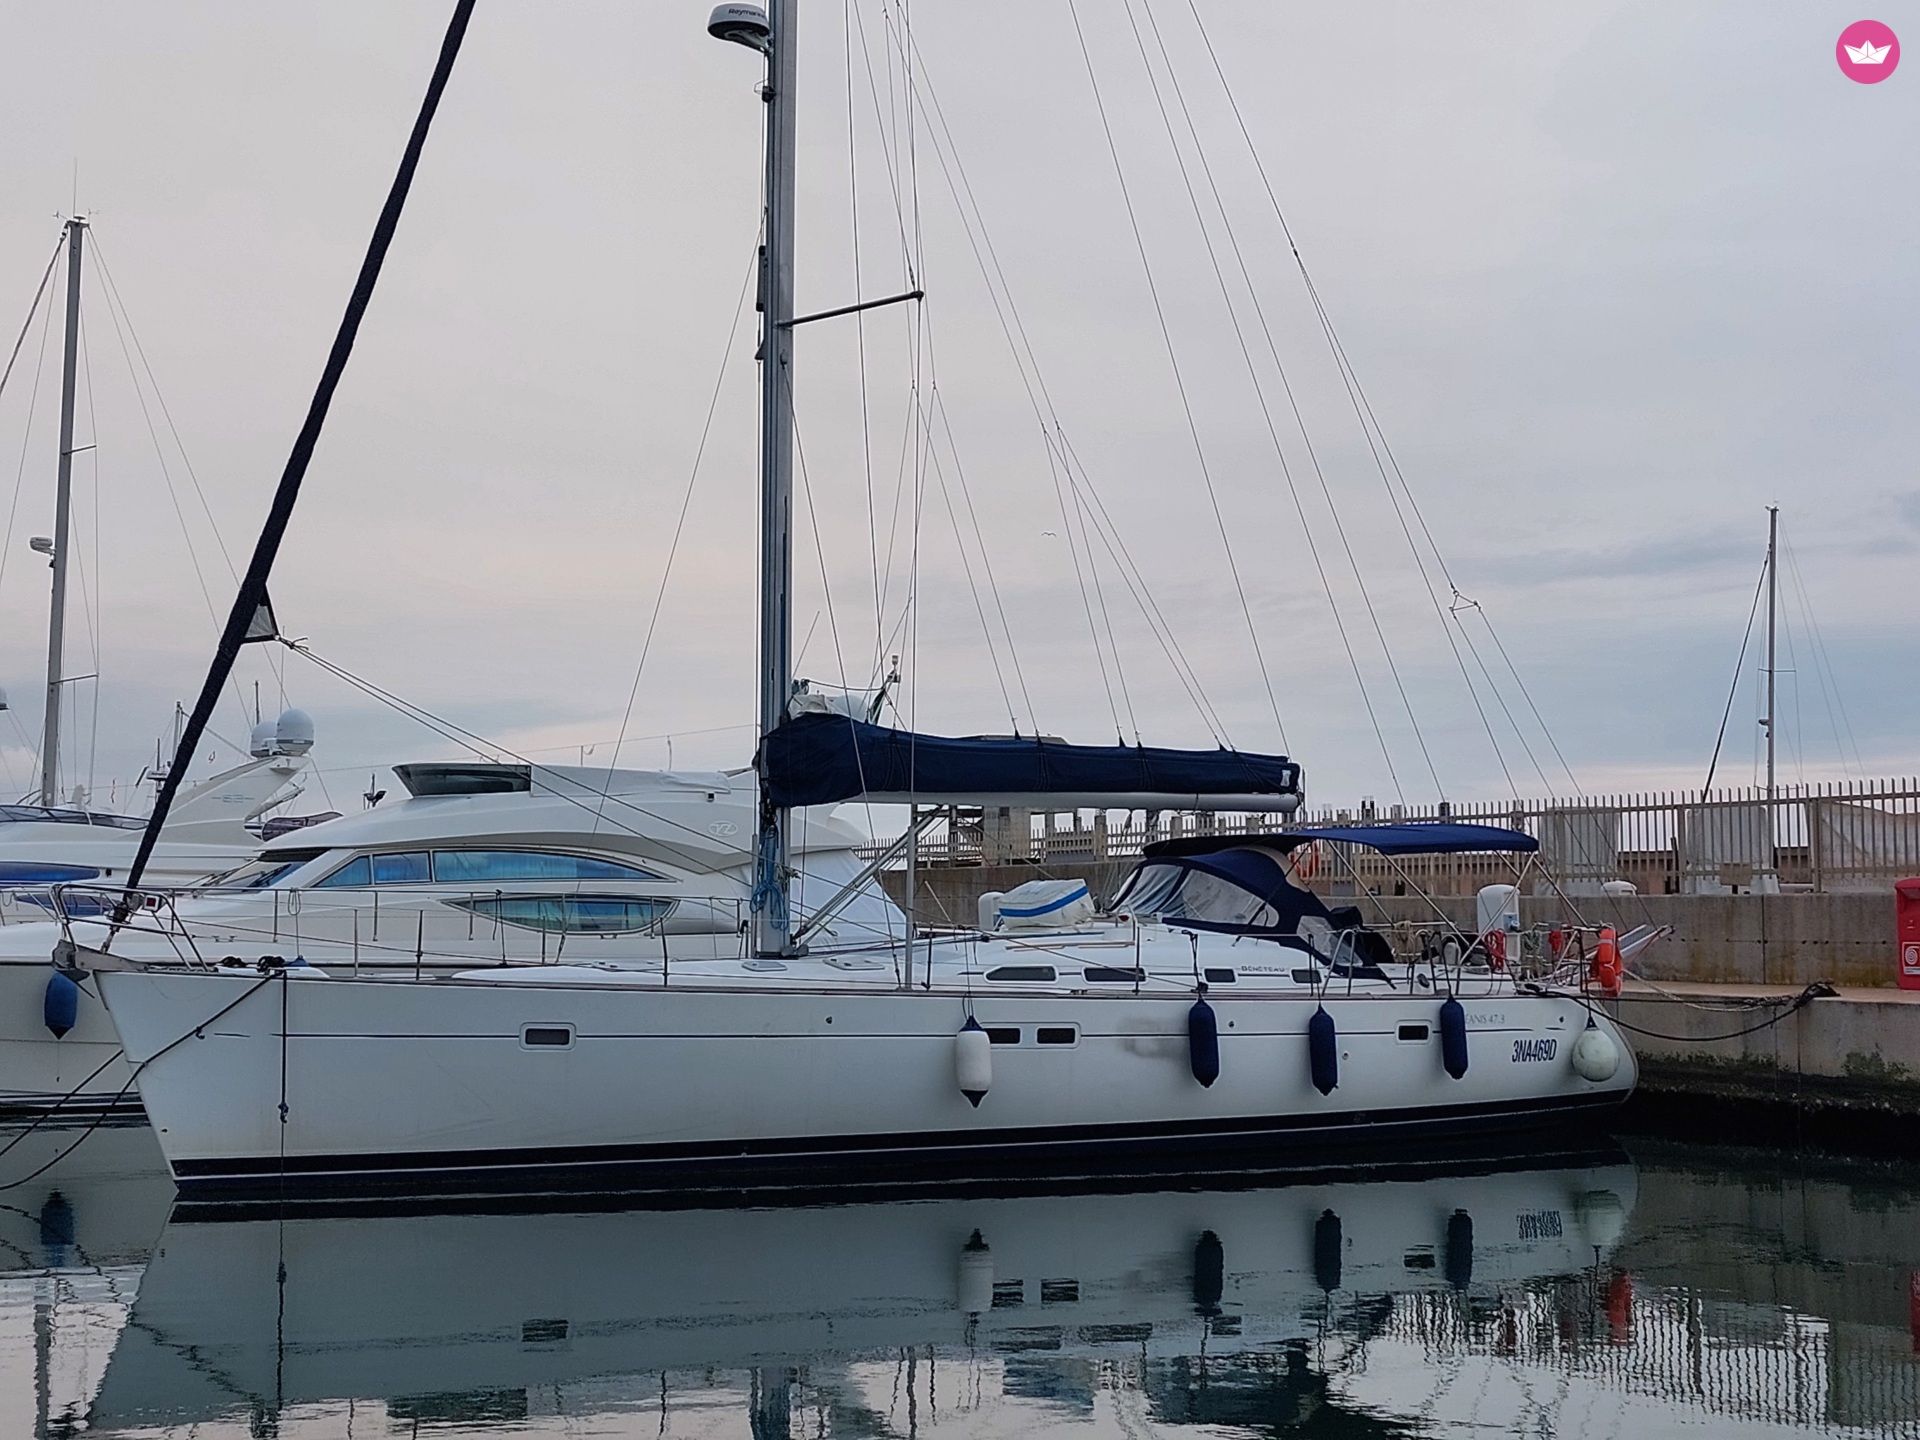 Beneteau 473 - Yacht Charter Nettuno & Boat hire in Italy Rome Anzio Marina di Nettuno 2